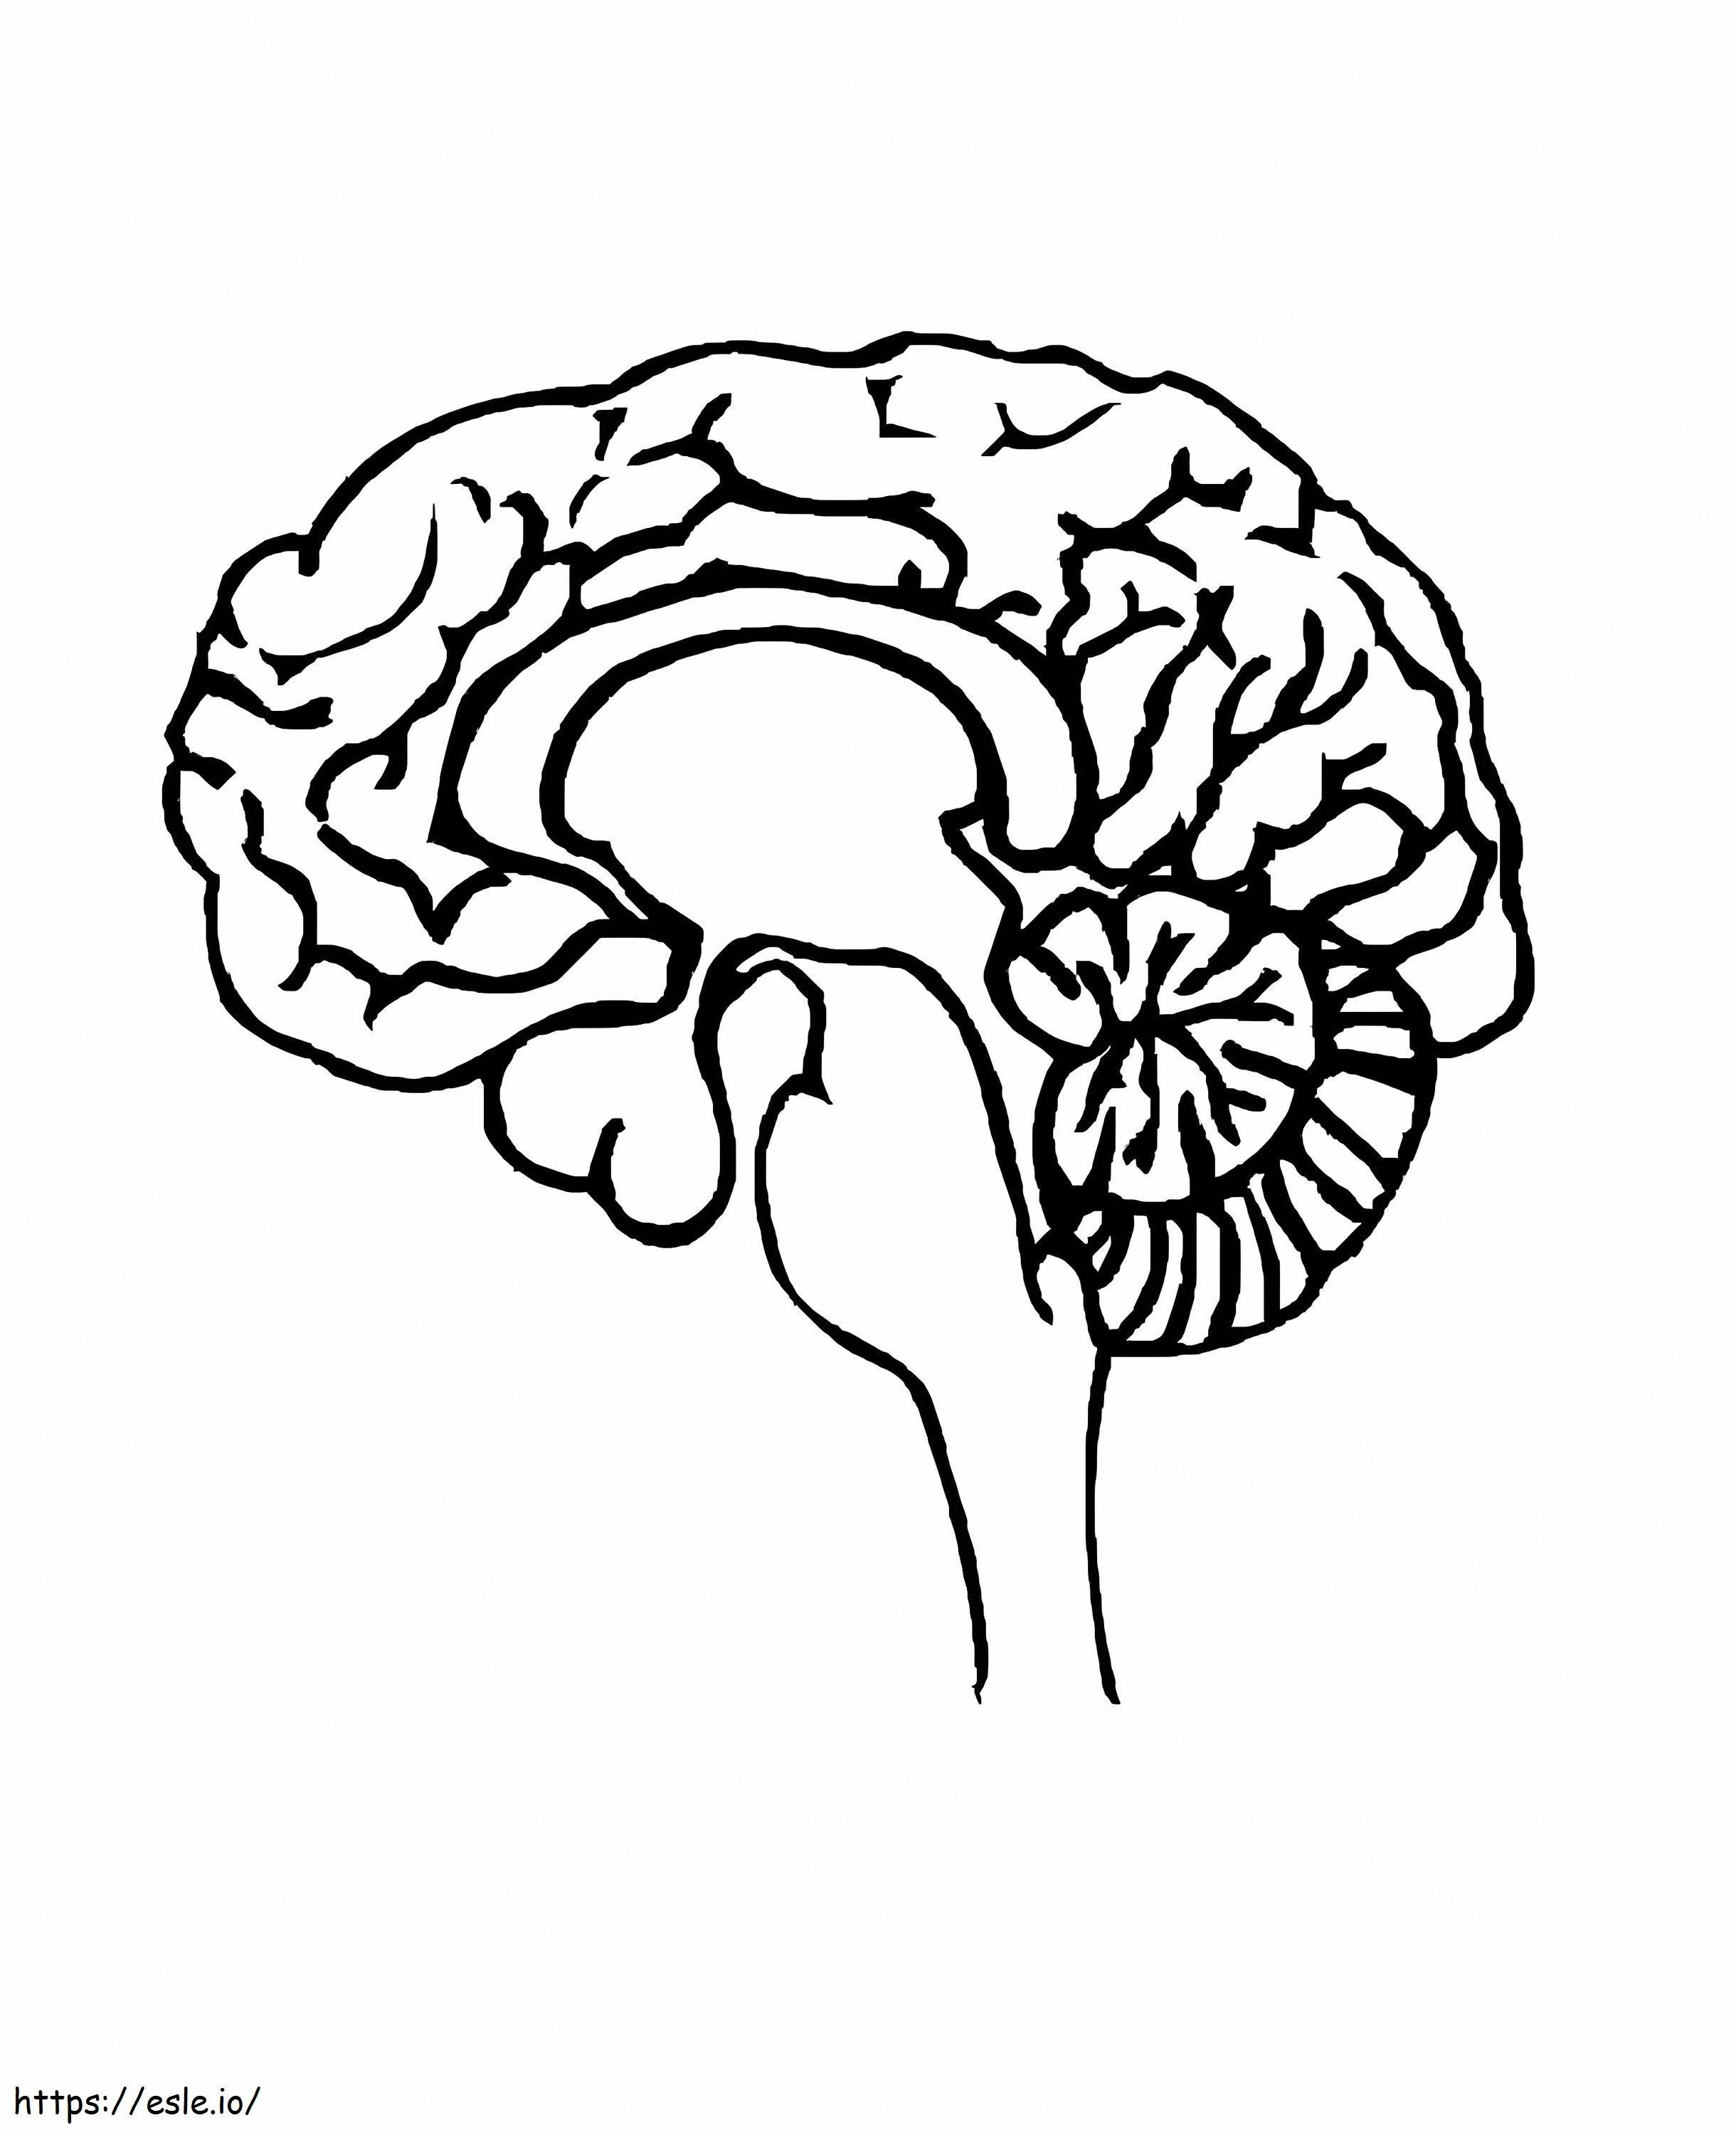 Human Brain Printable coloring page